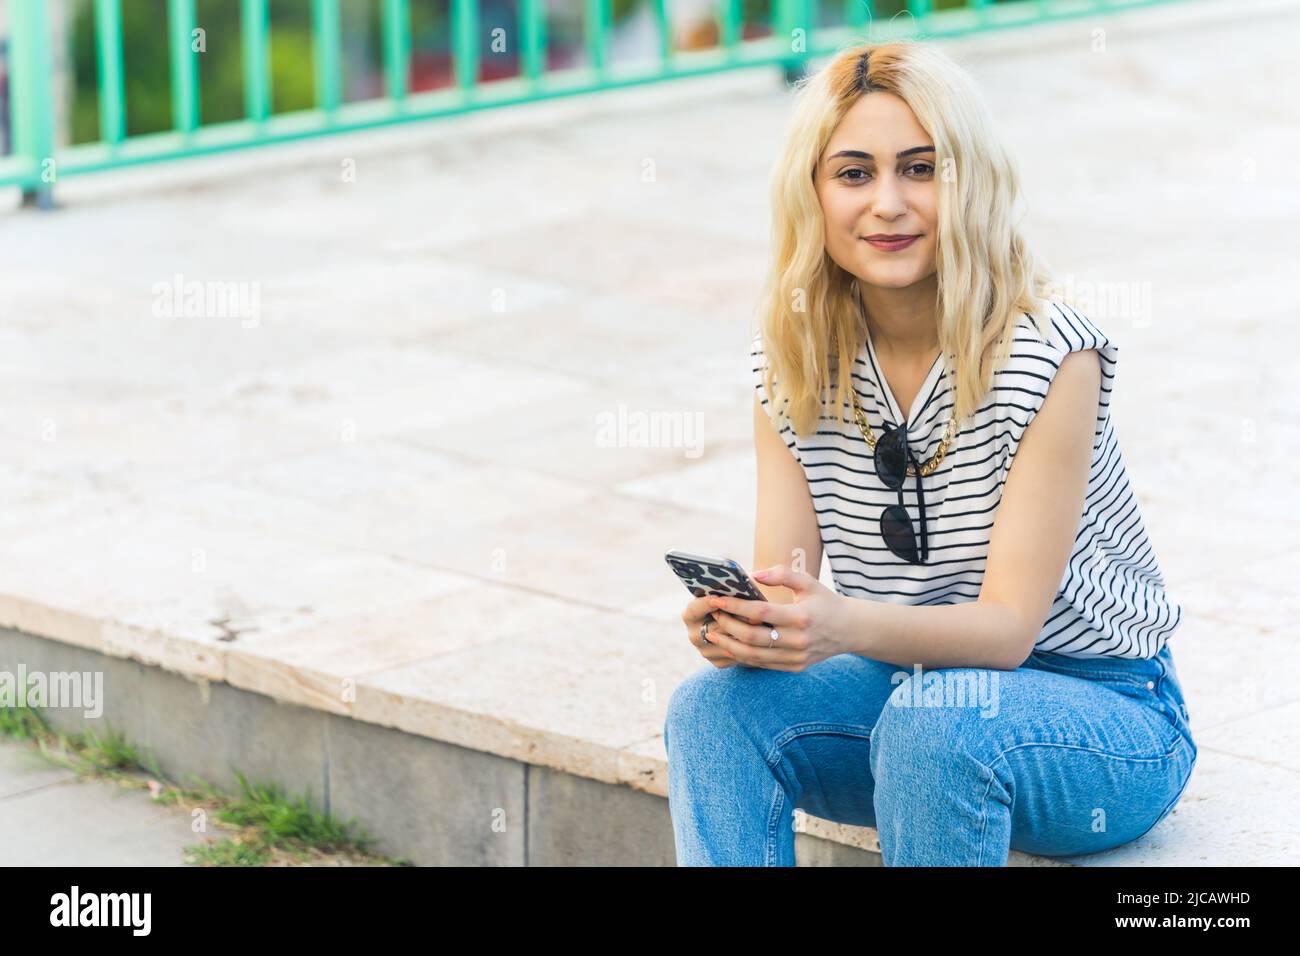 Prise de vue pleine et moyenne d'une jeune fille blanche blonde tenant son téléphone et souriant à l'extérieur. Photo de haute qualité Banque D'Images